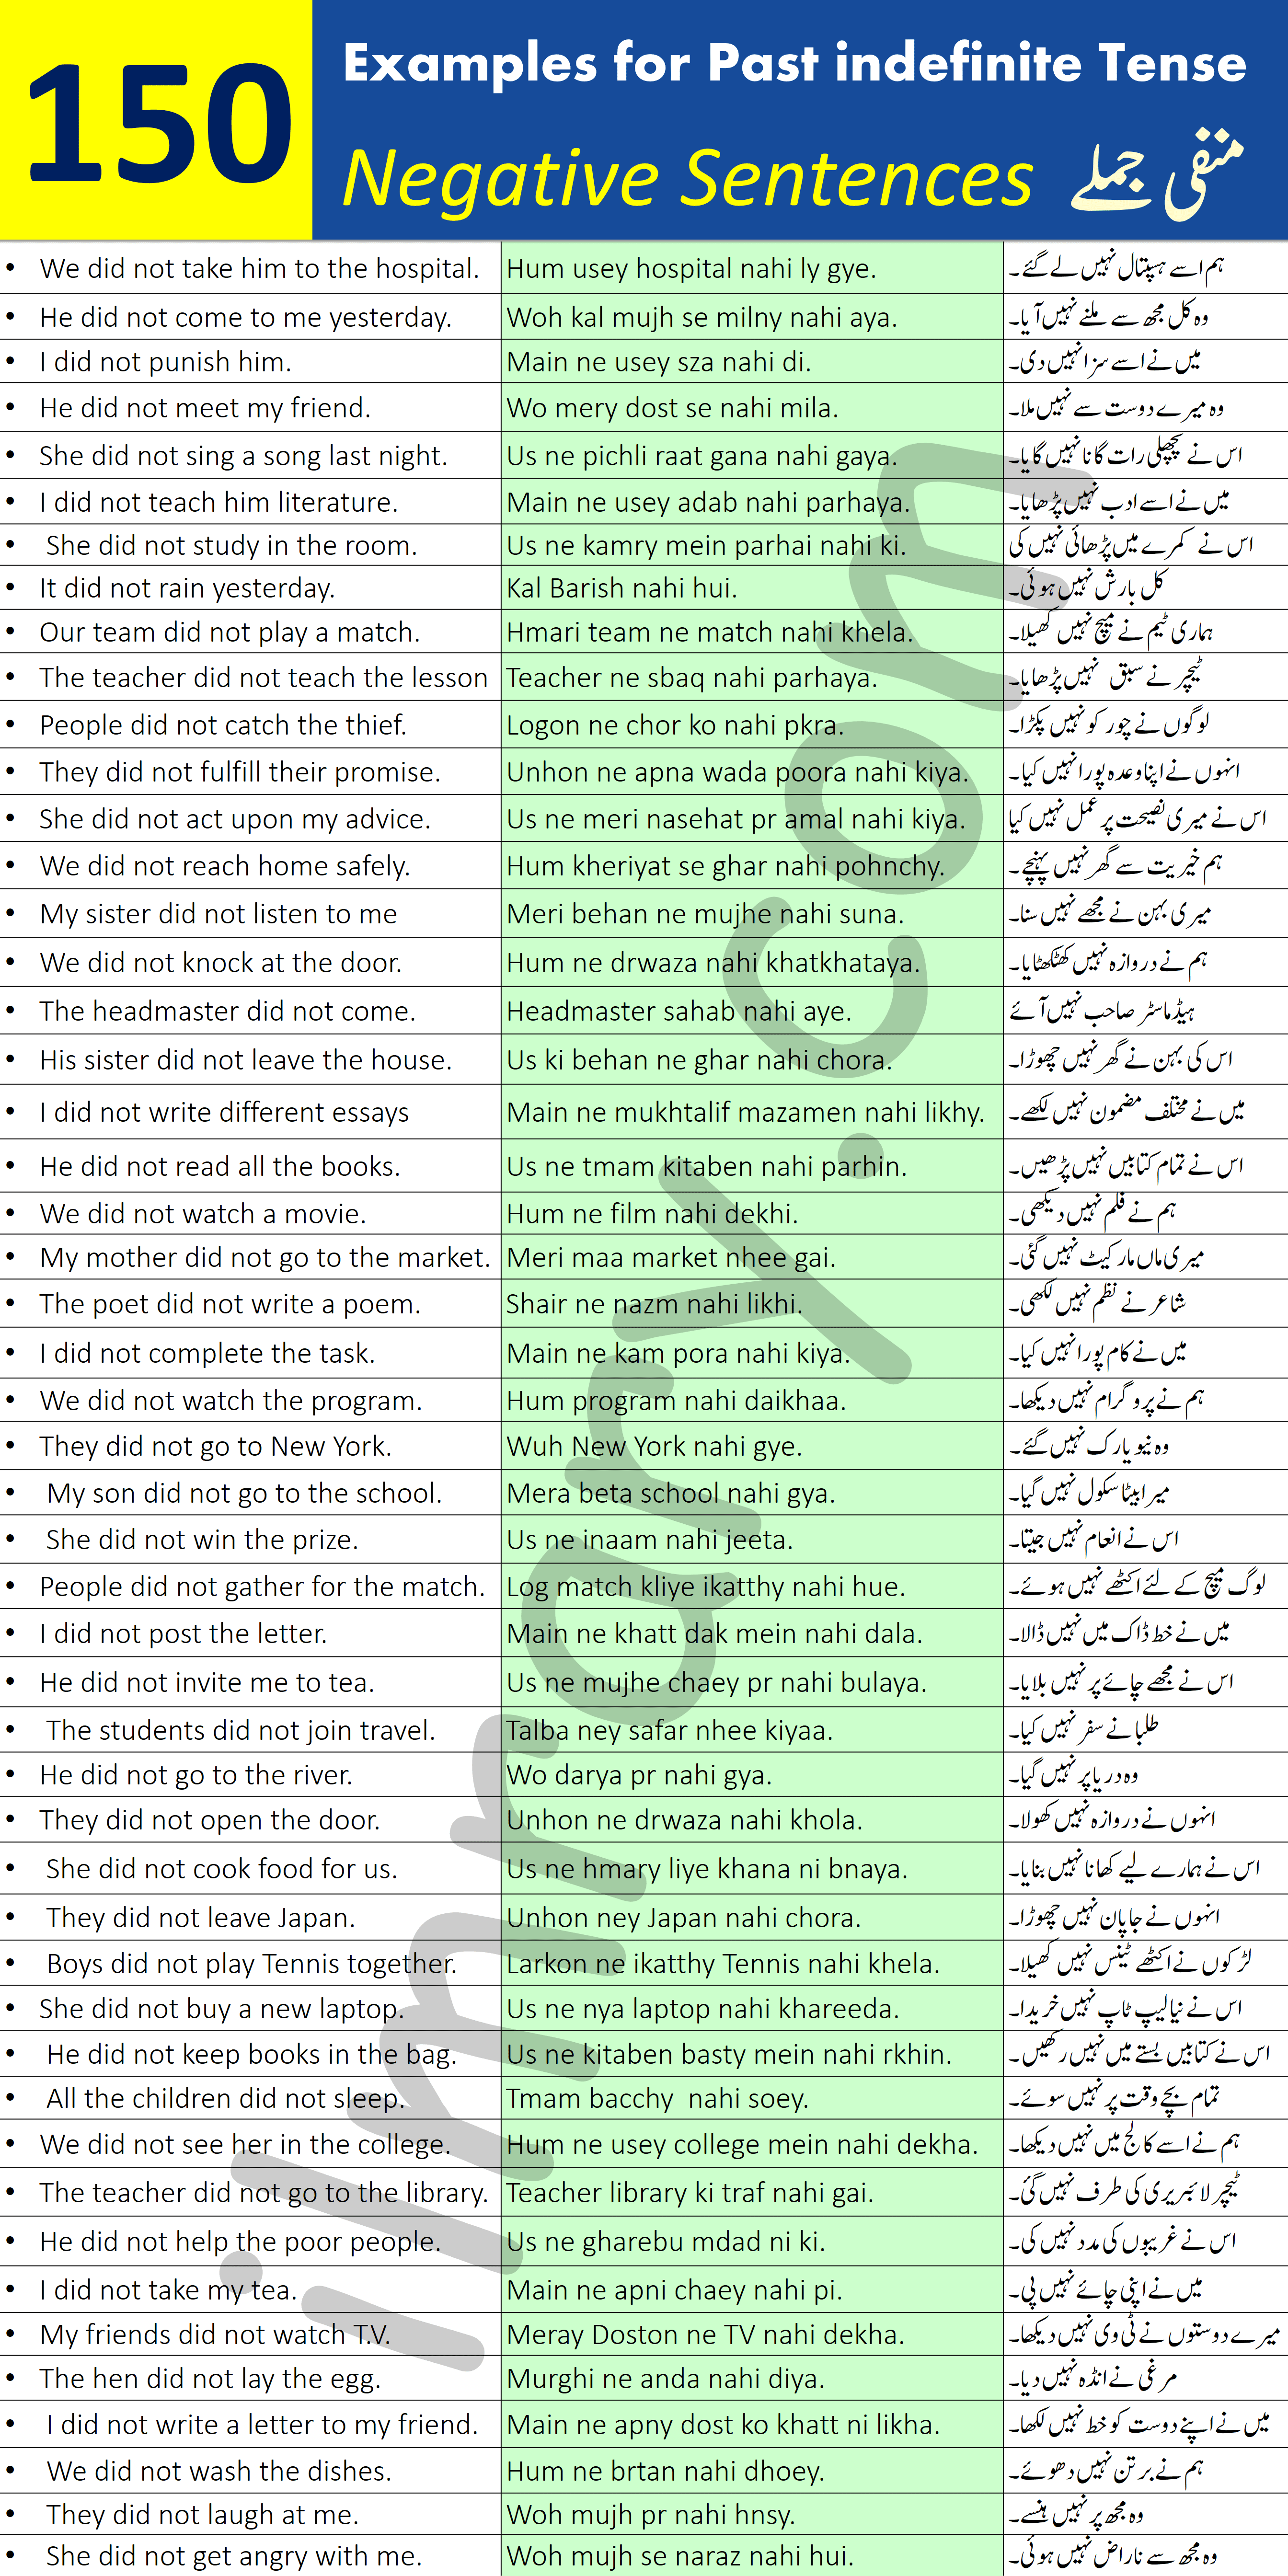 150 Negative Sentences for Past Indefinite Tense with Urdu Translation PDF